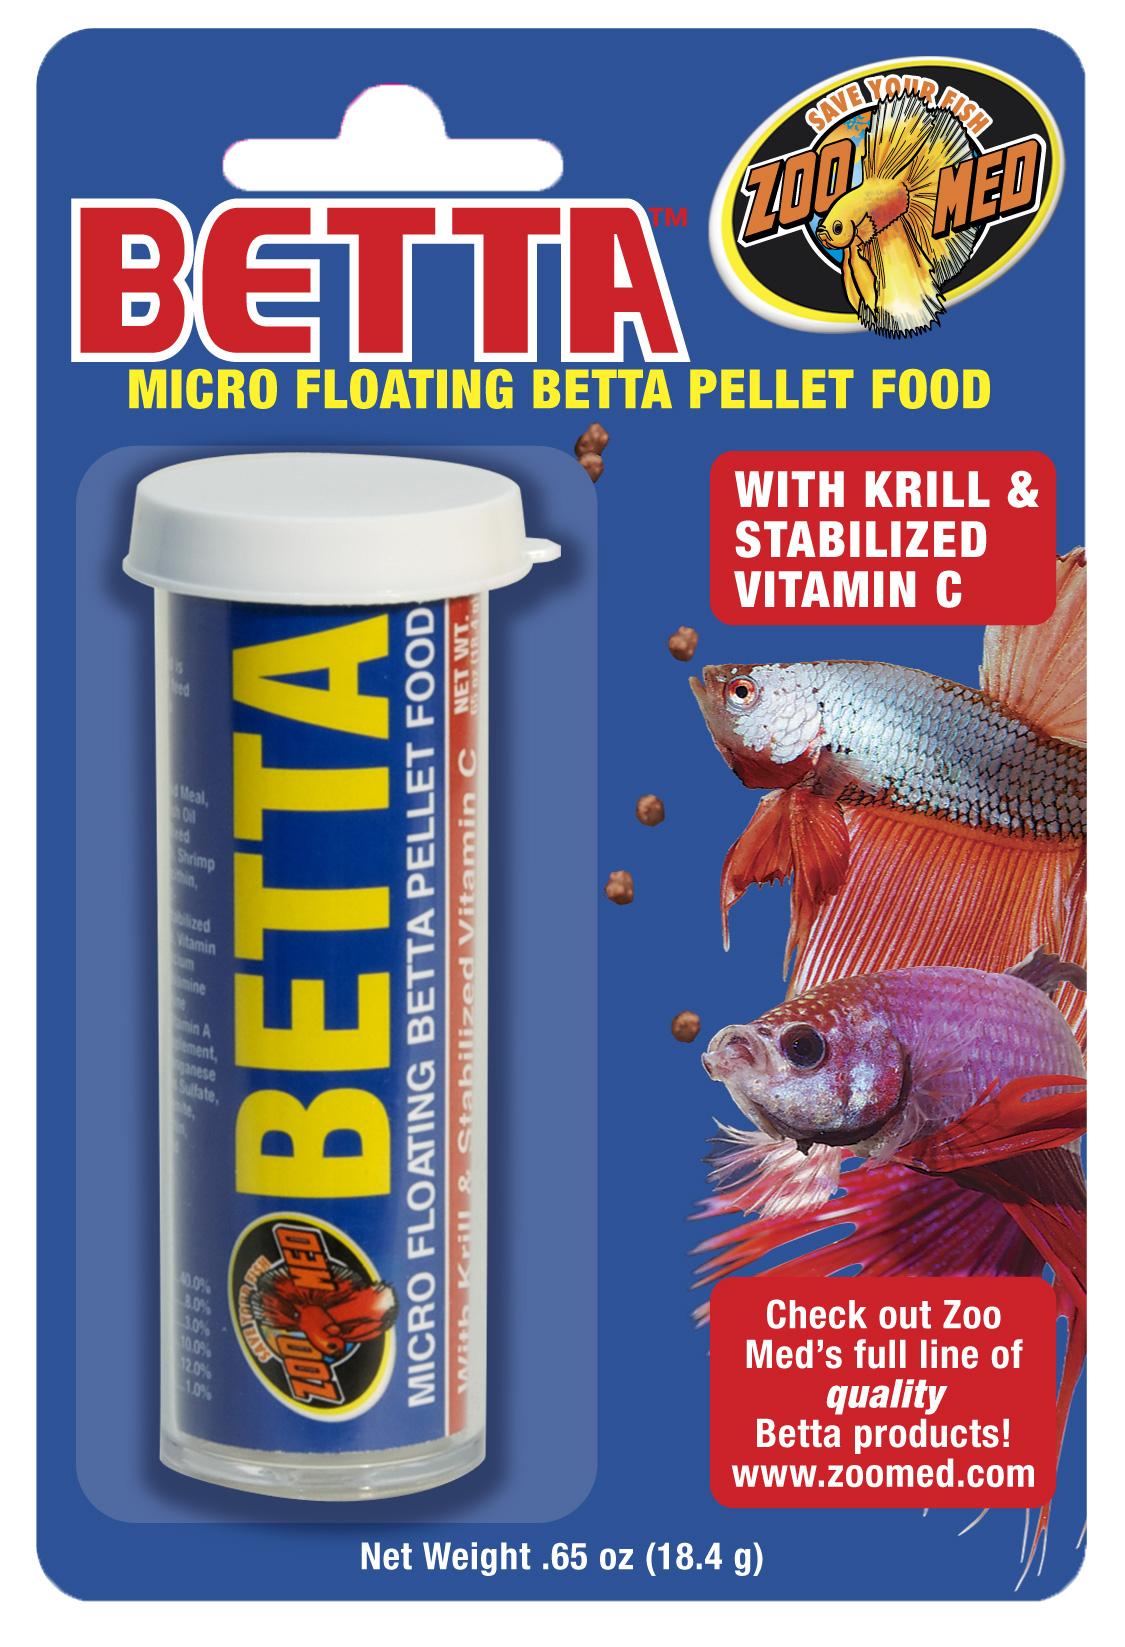 Micro Floating Betta Pellet Food